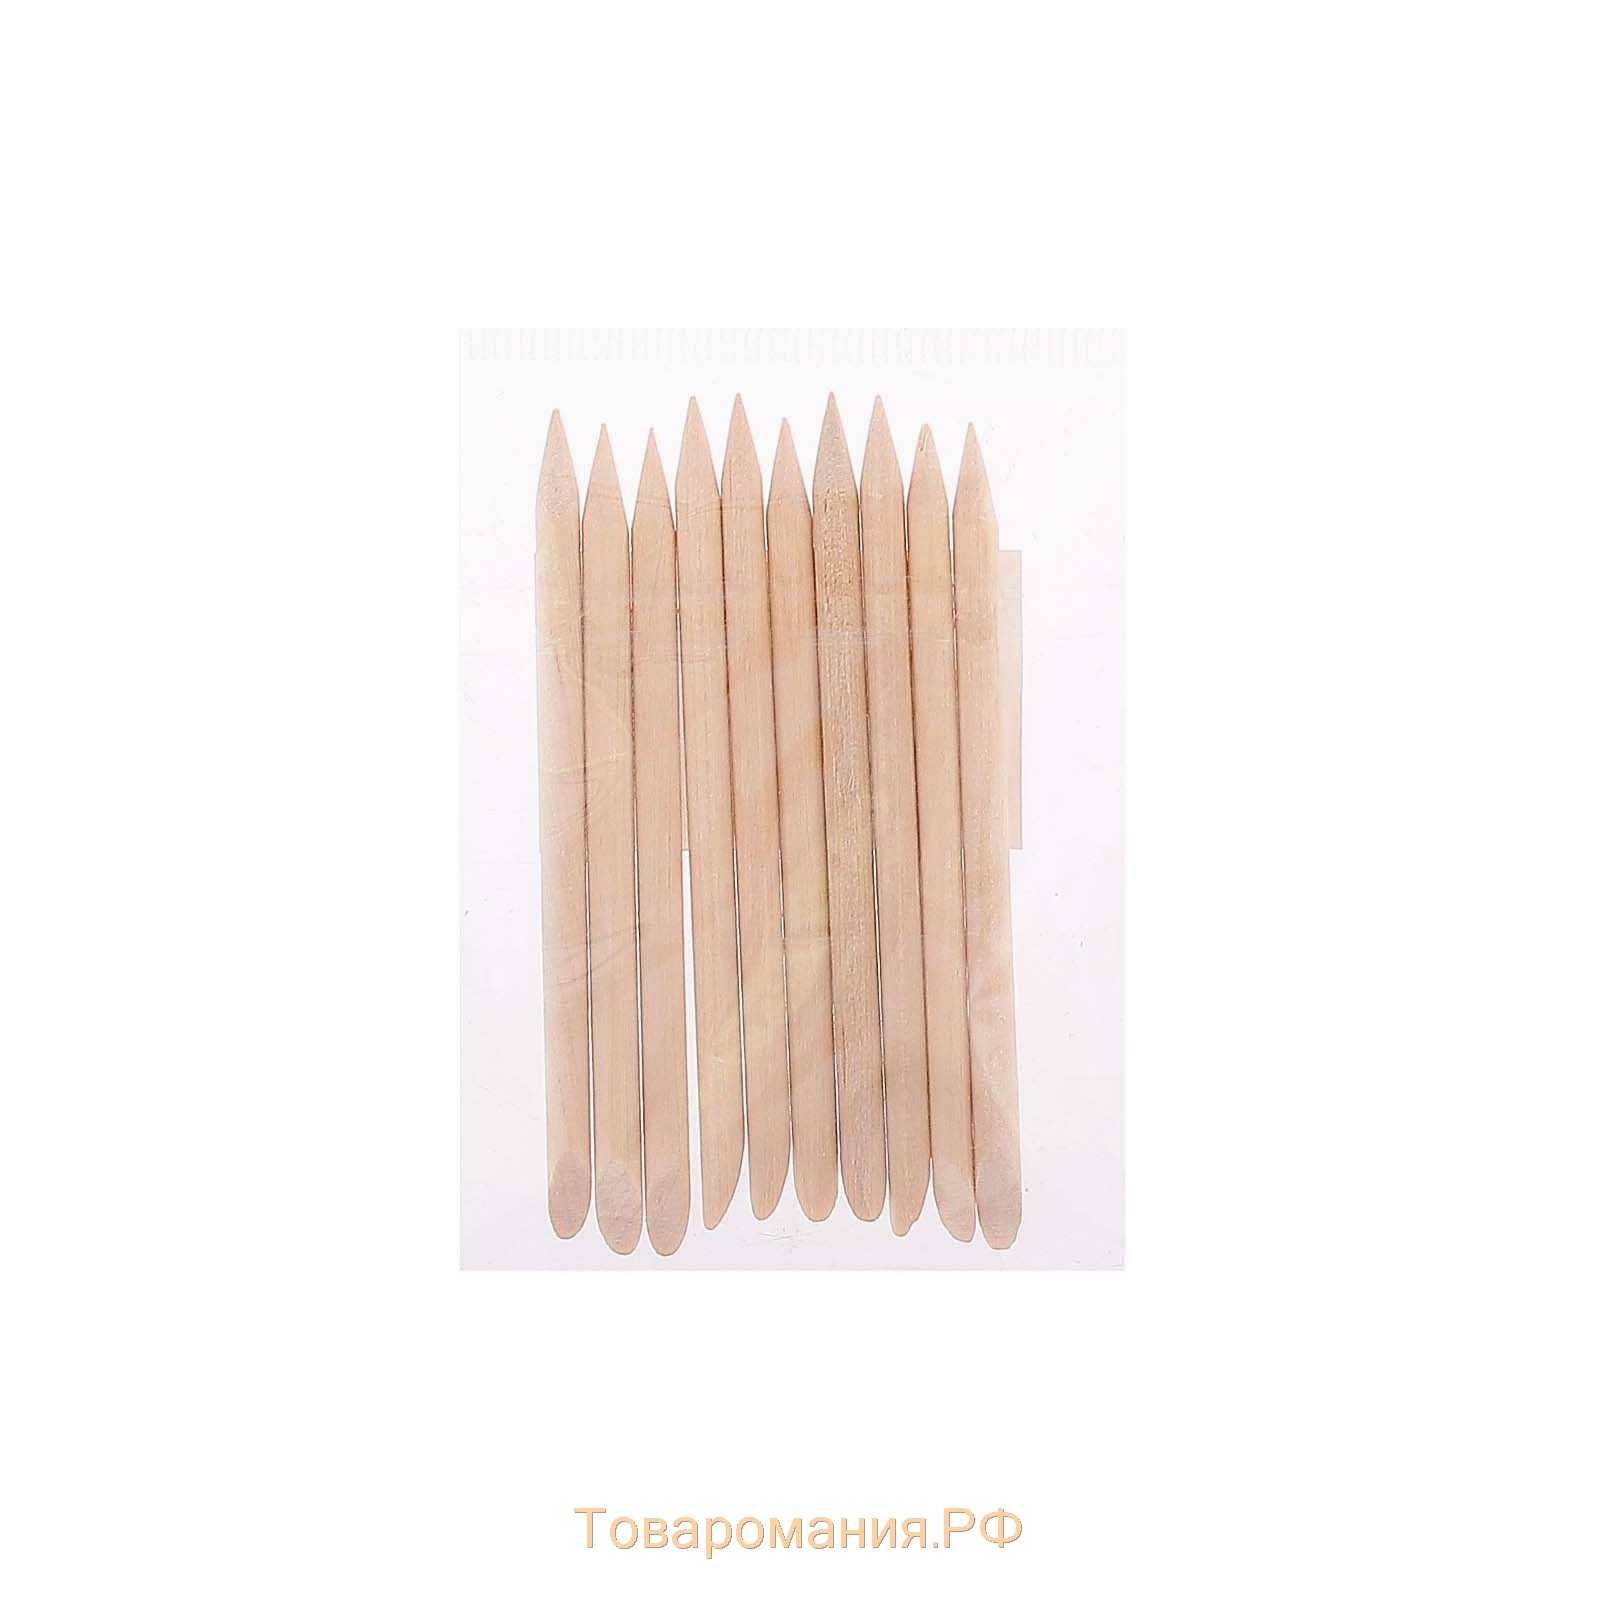 Апельсиновые палочки для маникюра, 7 см, 10 шт